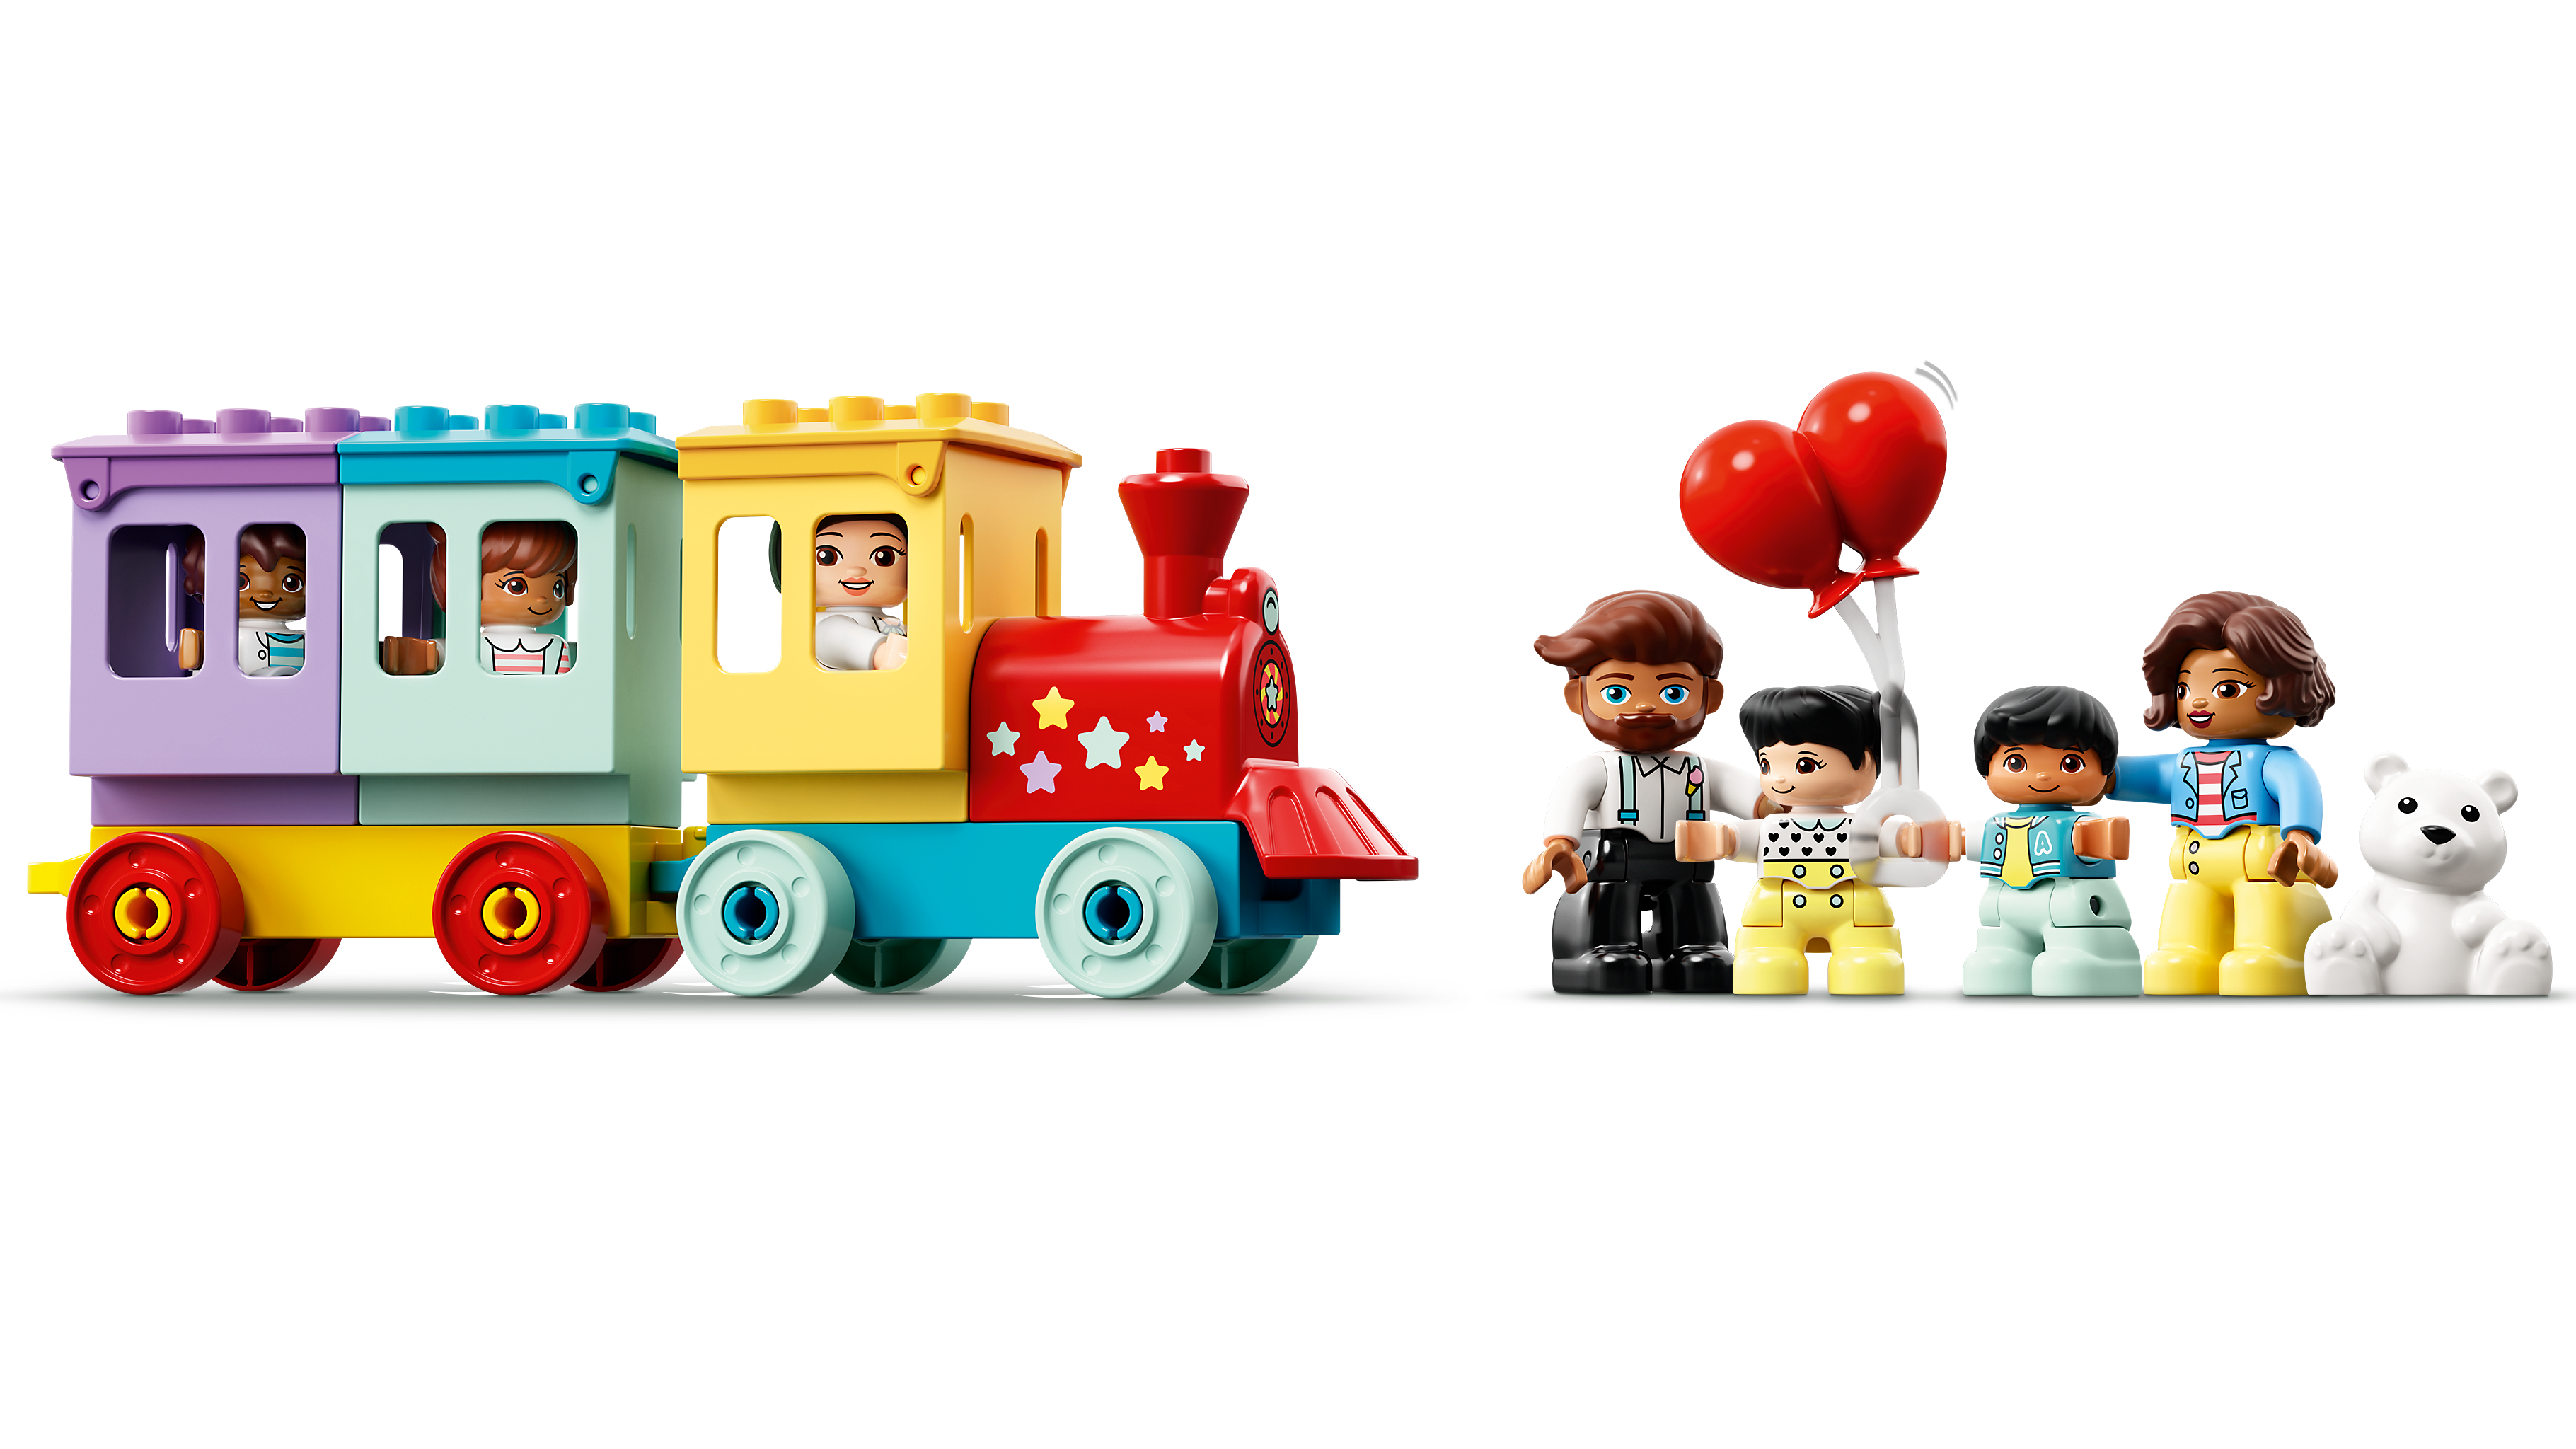 LEGO DUPLO Town 10956 Parco dei Divertimenti, Giocattoli per Bambini di 2  Anni, Parco Giochi con 7 Minifigure e Accessori